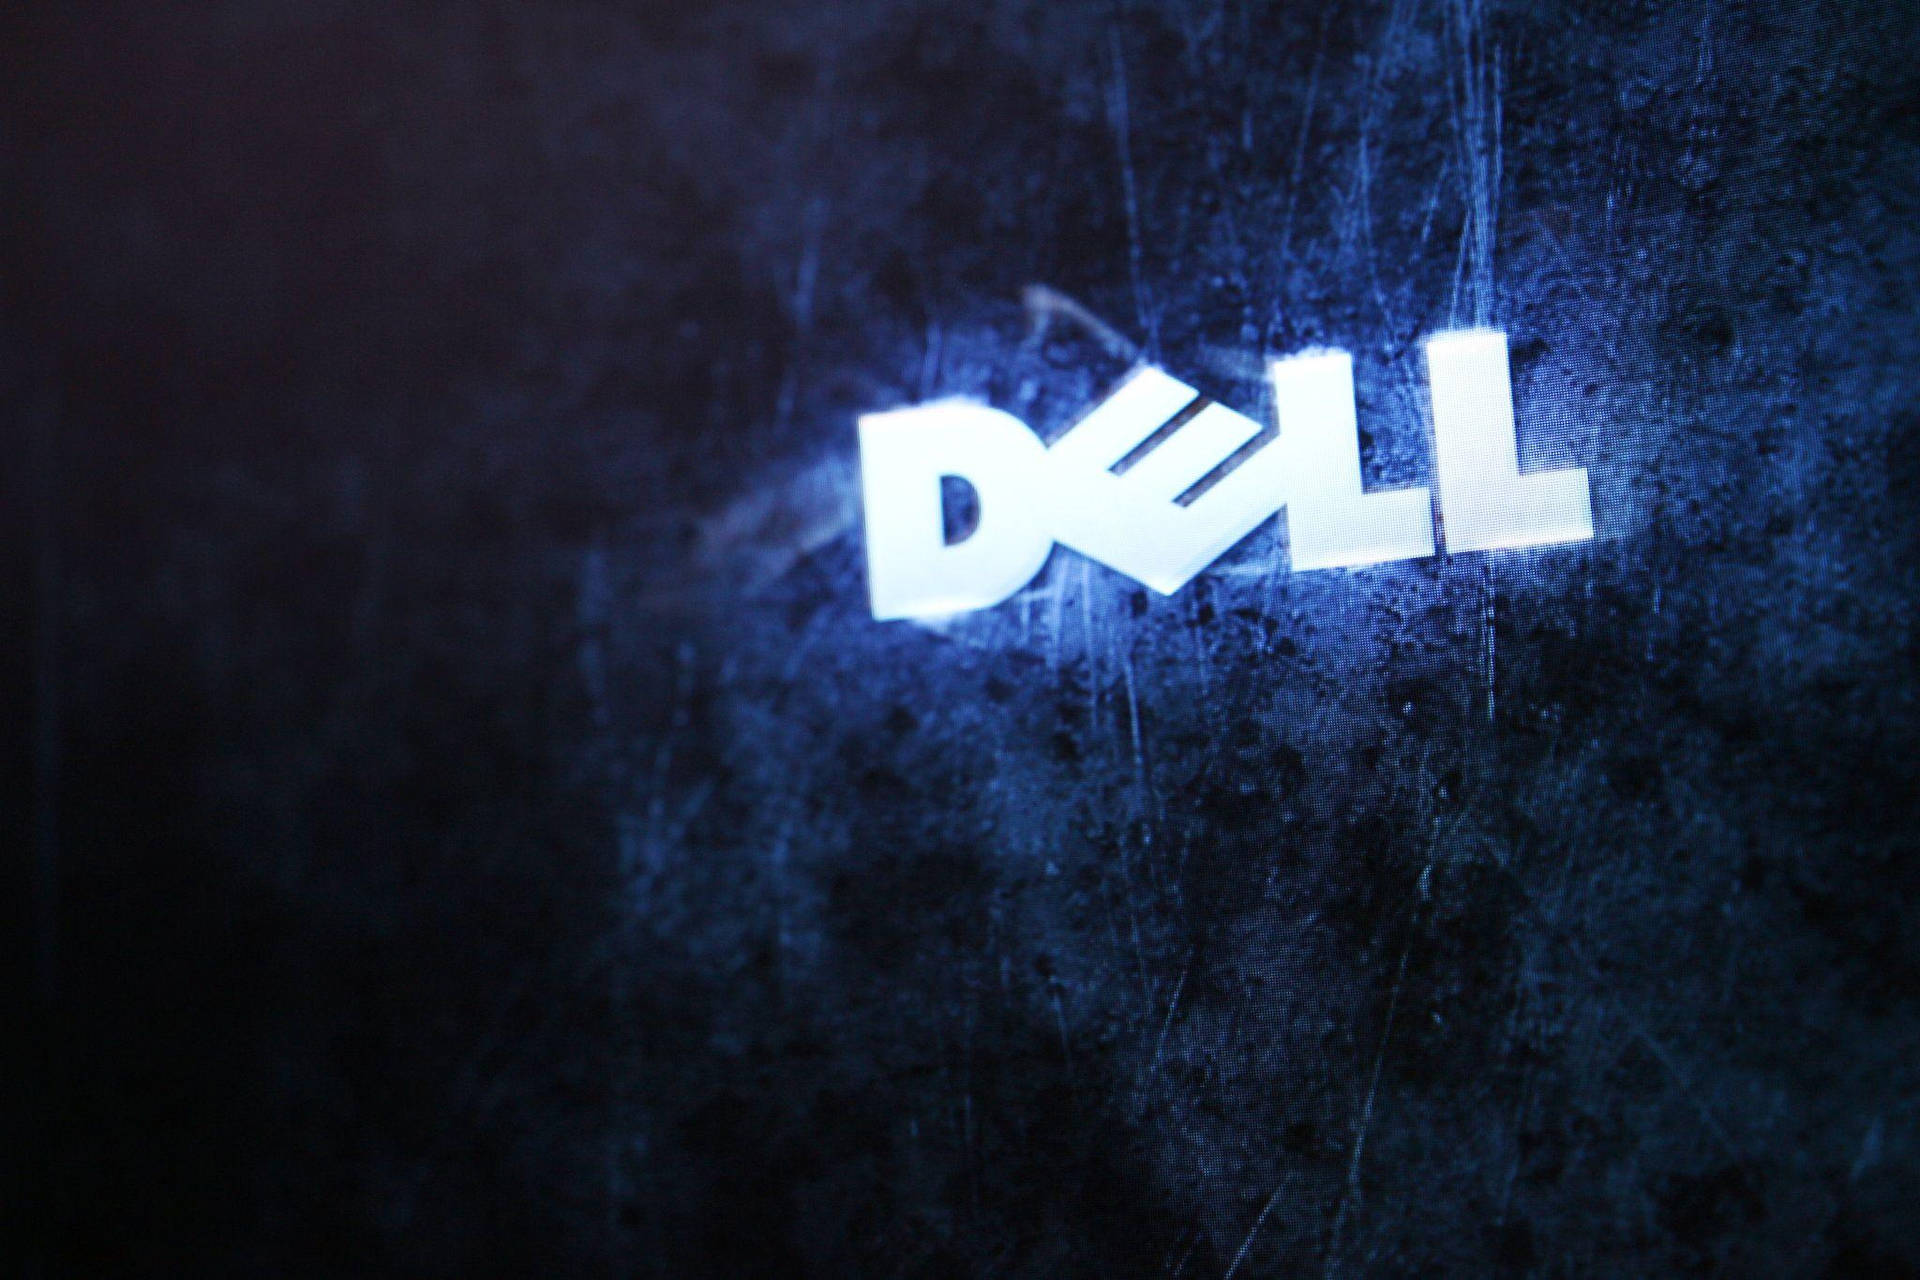 Glitchy Dell Hd Logo Background